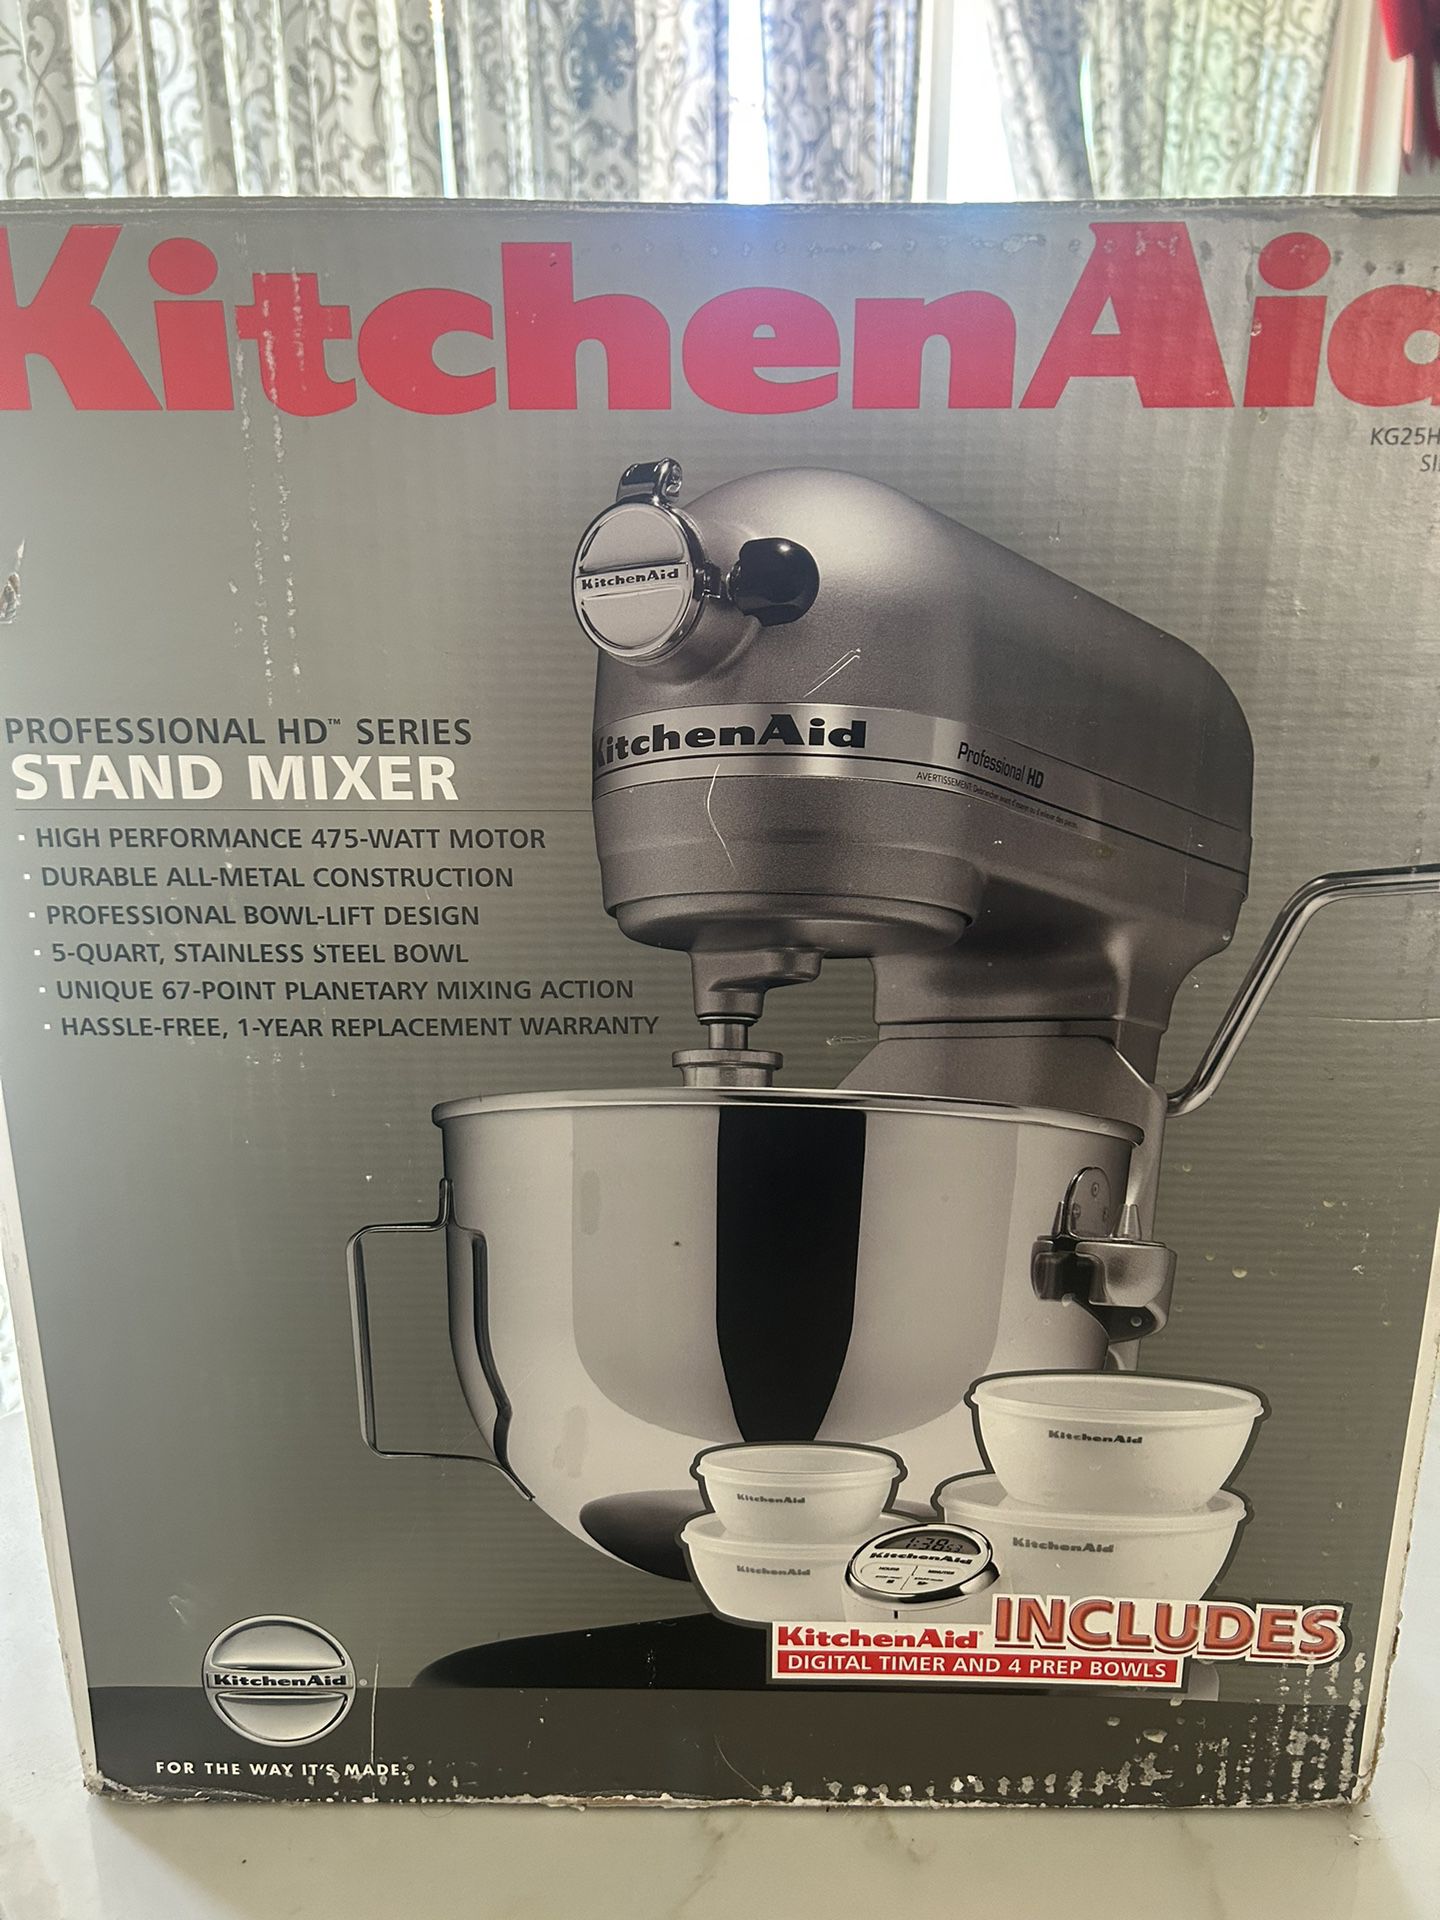 Kitchenaid Mixer Professional HD, 5-Quart Stand Mixer